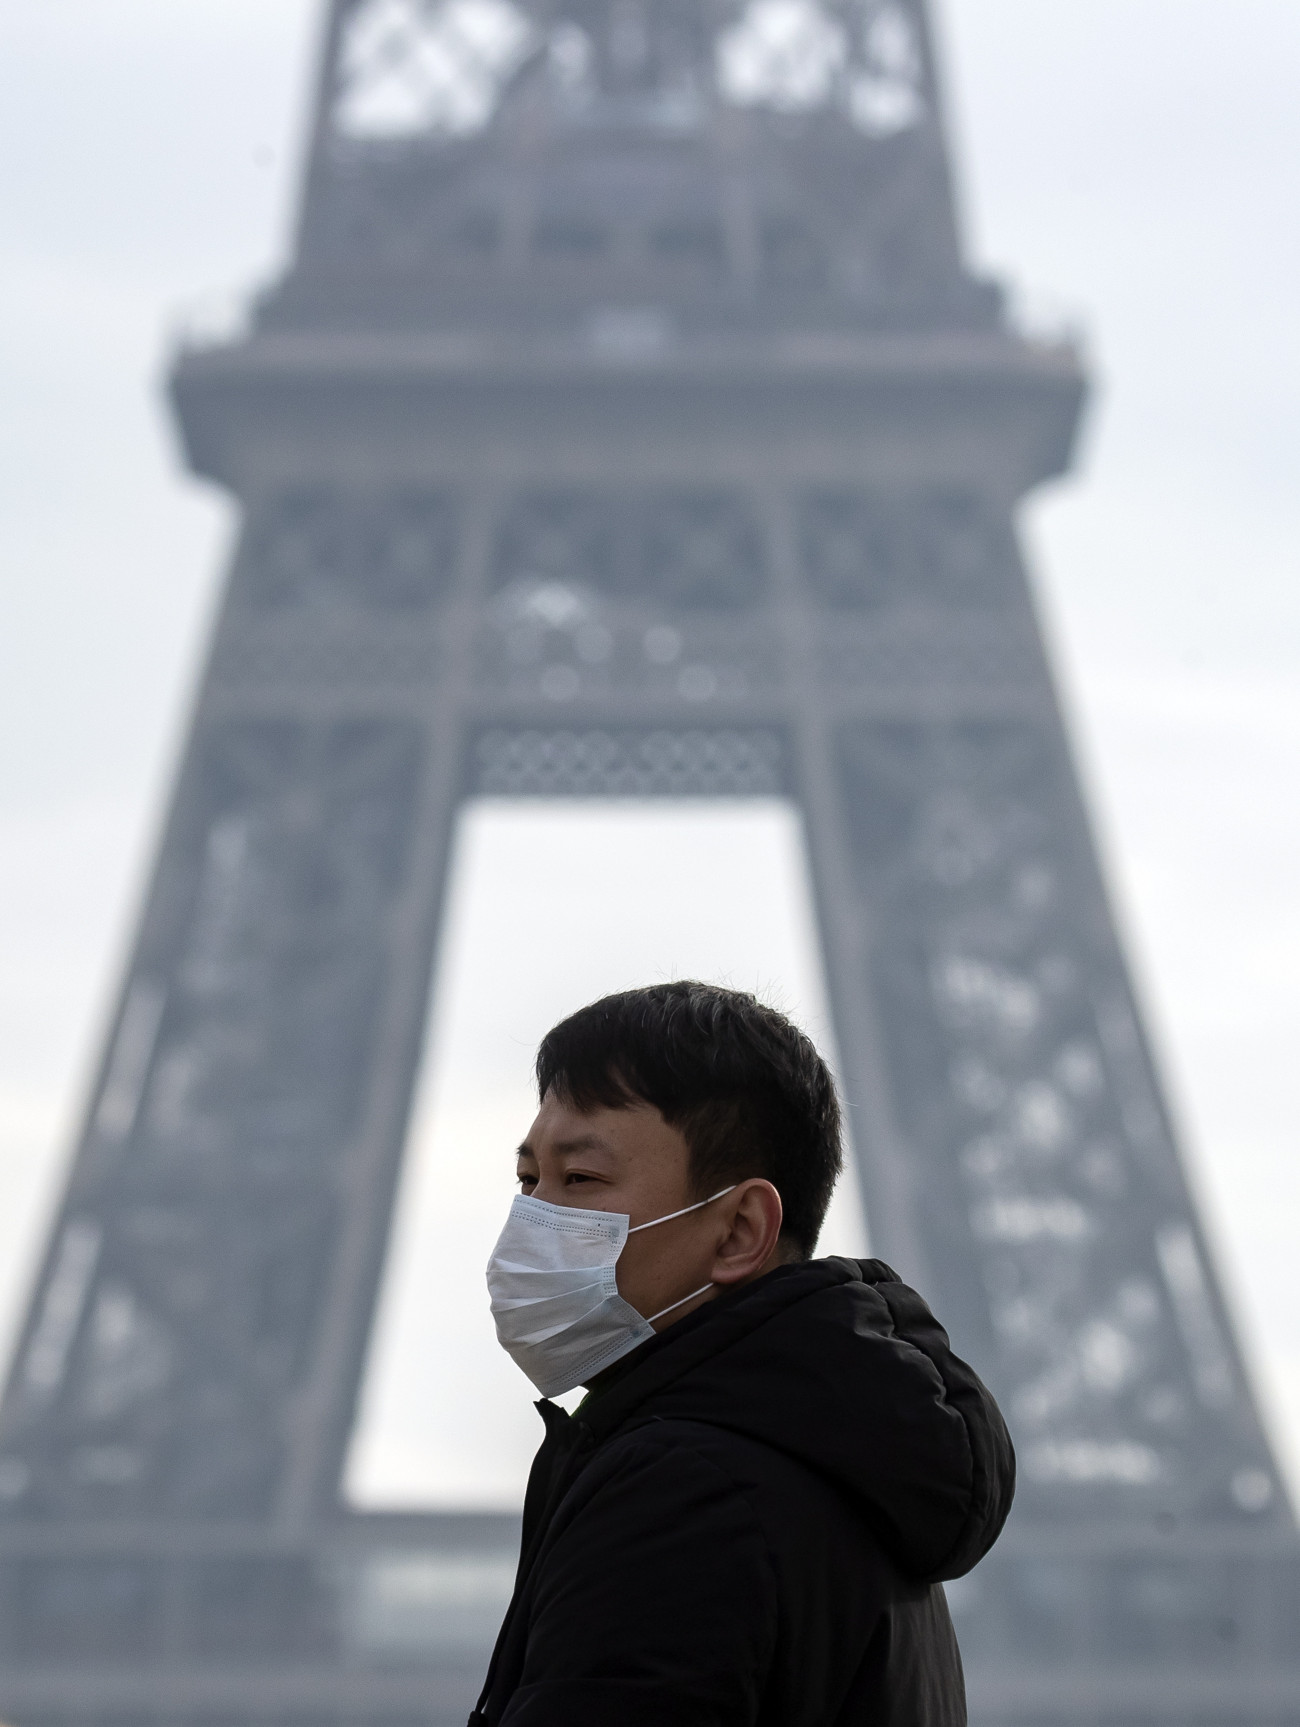 Az új, tüdőgyulladást okozó koronavírus terjedése miatt szájmaszkot visel egy turista a párizsi Eiffel-toronynál.
MTI/EPA/Ian Langsdon